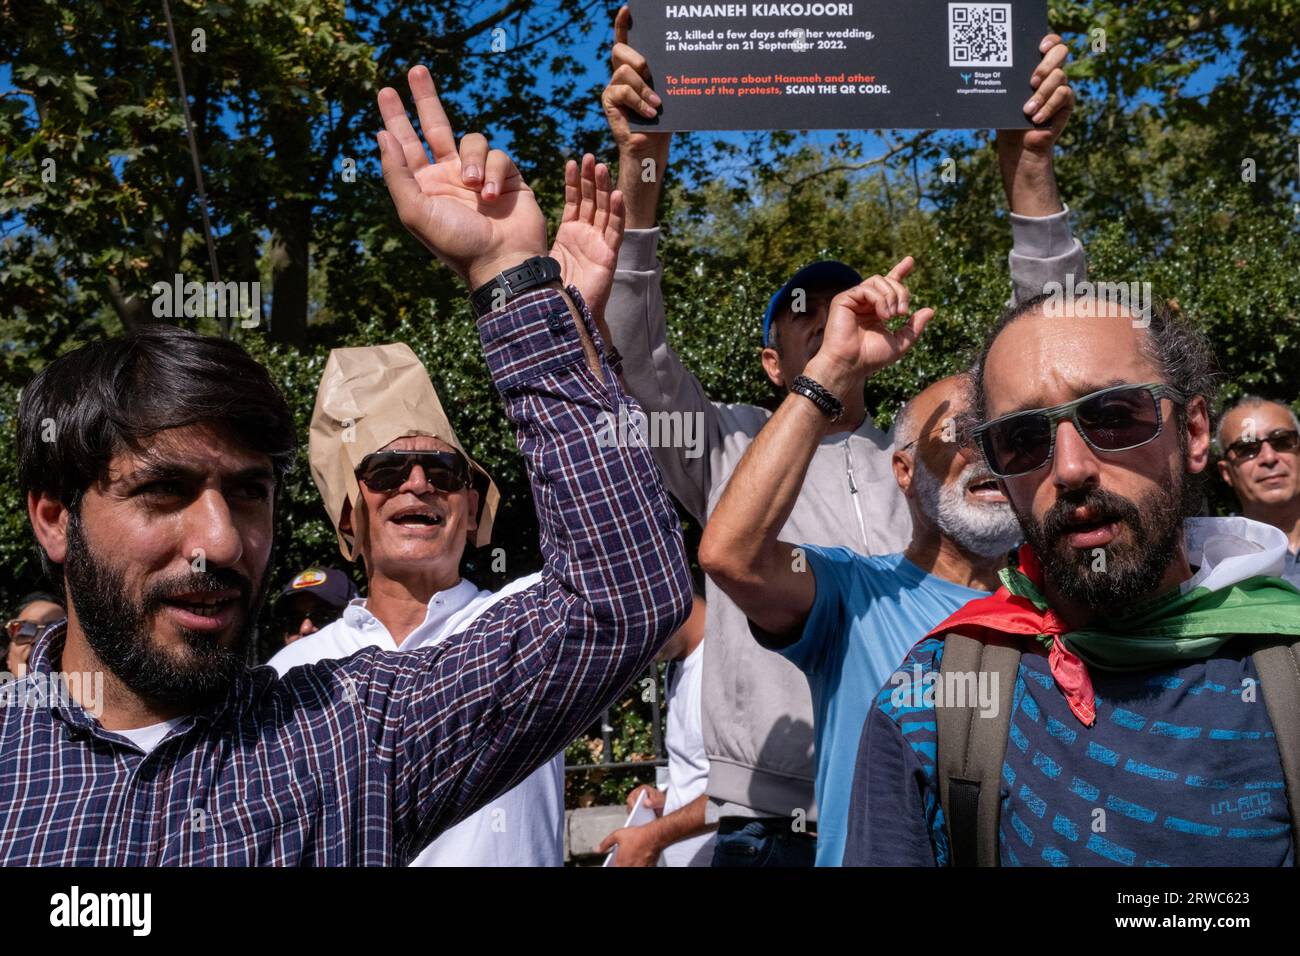 Am einjährigen Todestag von Mahsa Amini begeben sich britische Iraner auf die Straßen Londons, um gegen die iranische Regierung zu protestieren. Stockfoto